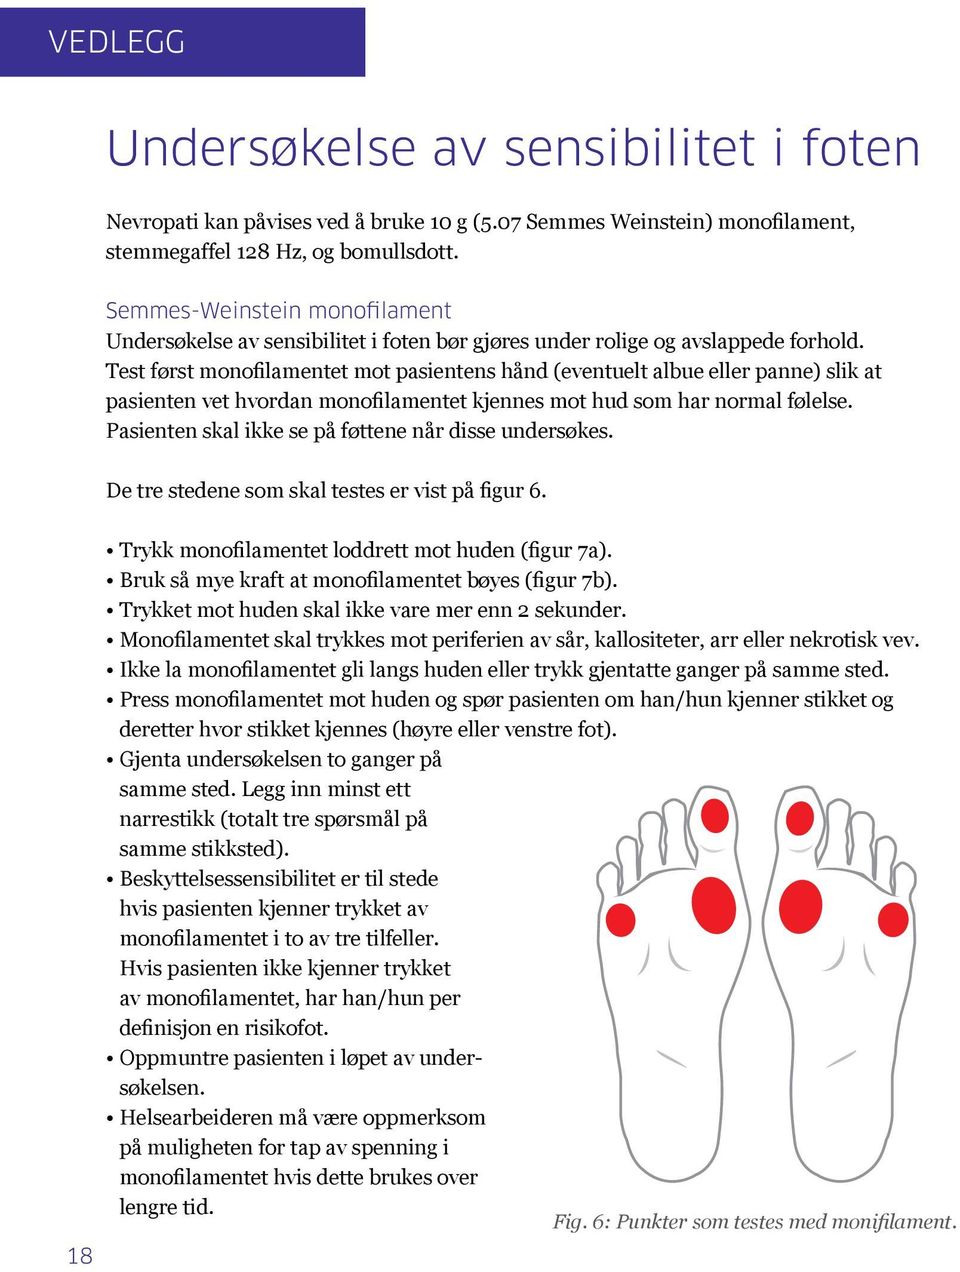 Test først monofilamentet mot pasientens hånd (eventuelt albue eller panne) slik at pasienten vet hvordan monofilamentet kjennes mot hud som har normal følelse.